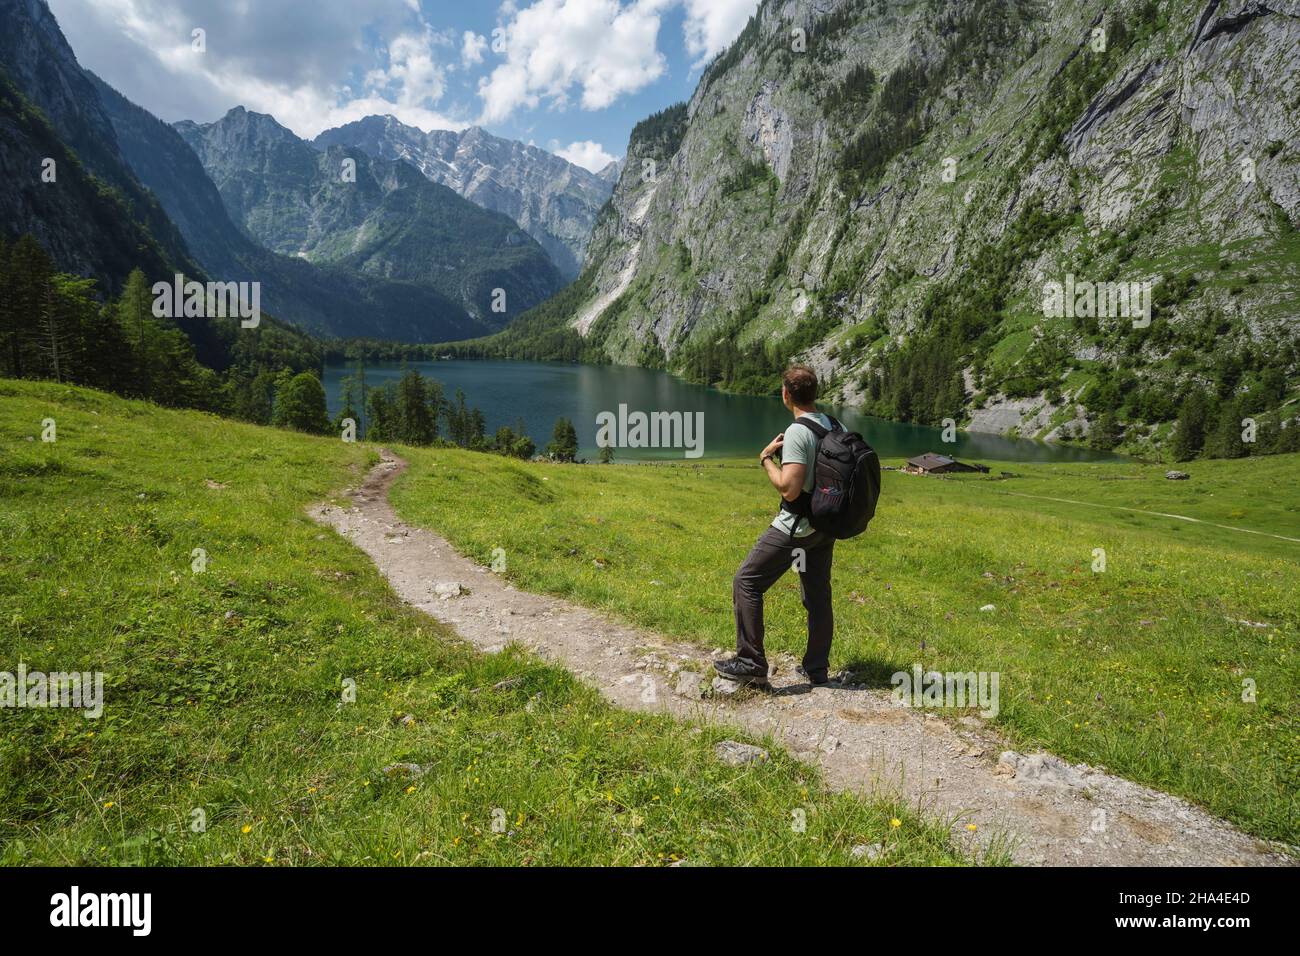 homme avec sac à dos sur le sentier de randonnée appréciant hinterer gosausee, salzkammergut. autriche. Banque D'Images